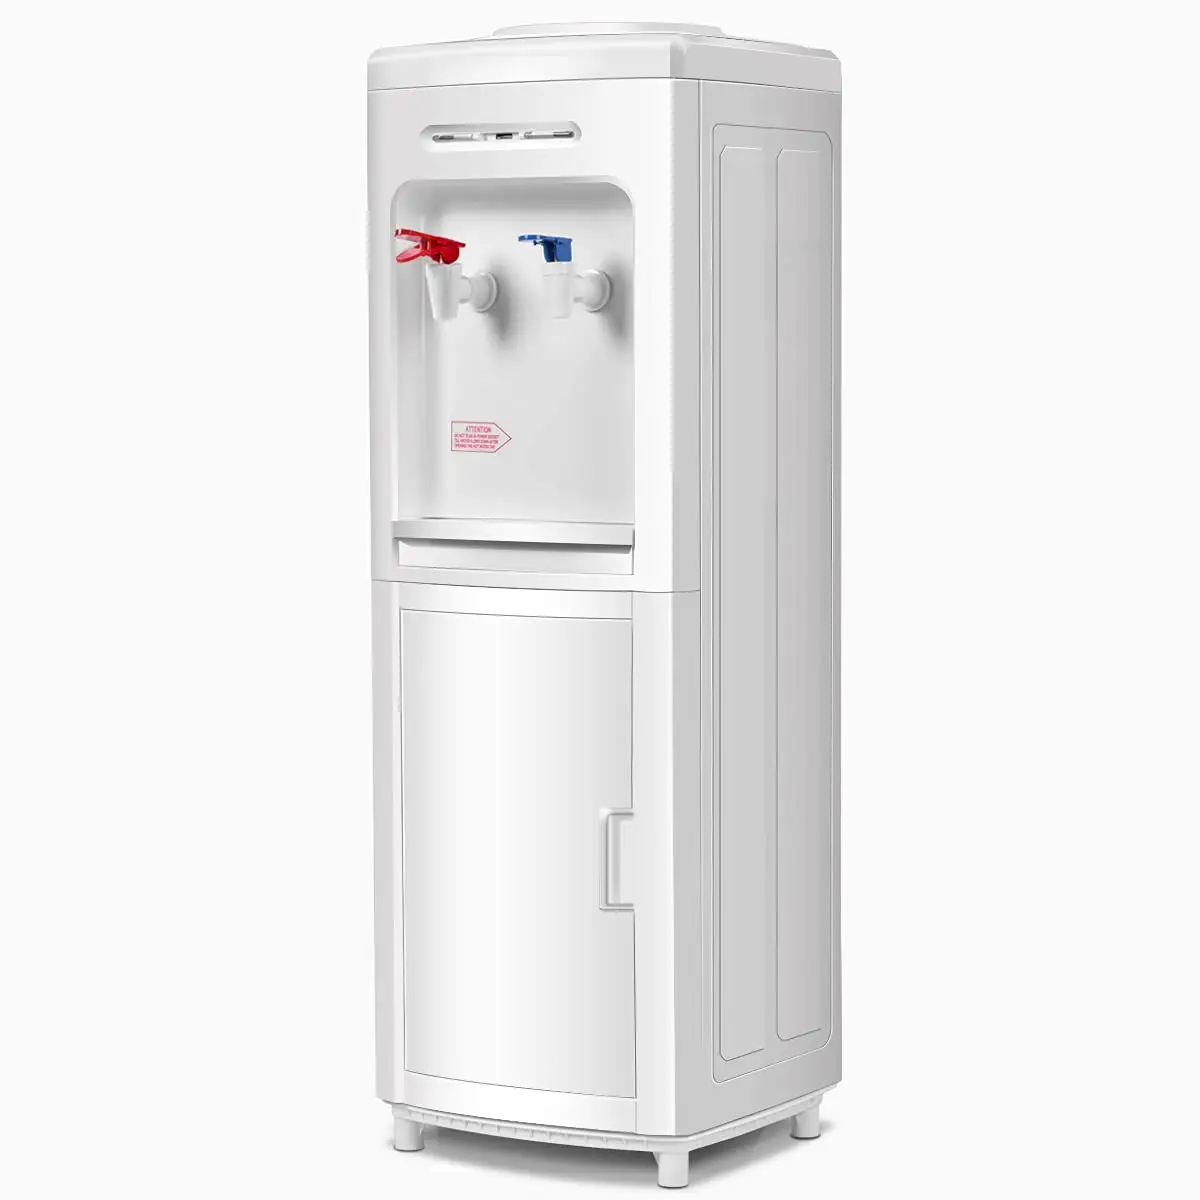 Dispensador de agua fría y caliente de carga superior, botellas de 5 galones, dispensador de agua eléctrico para uso doméstico